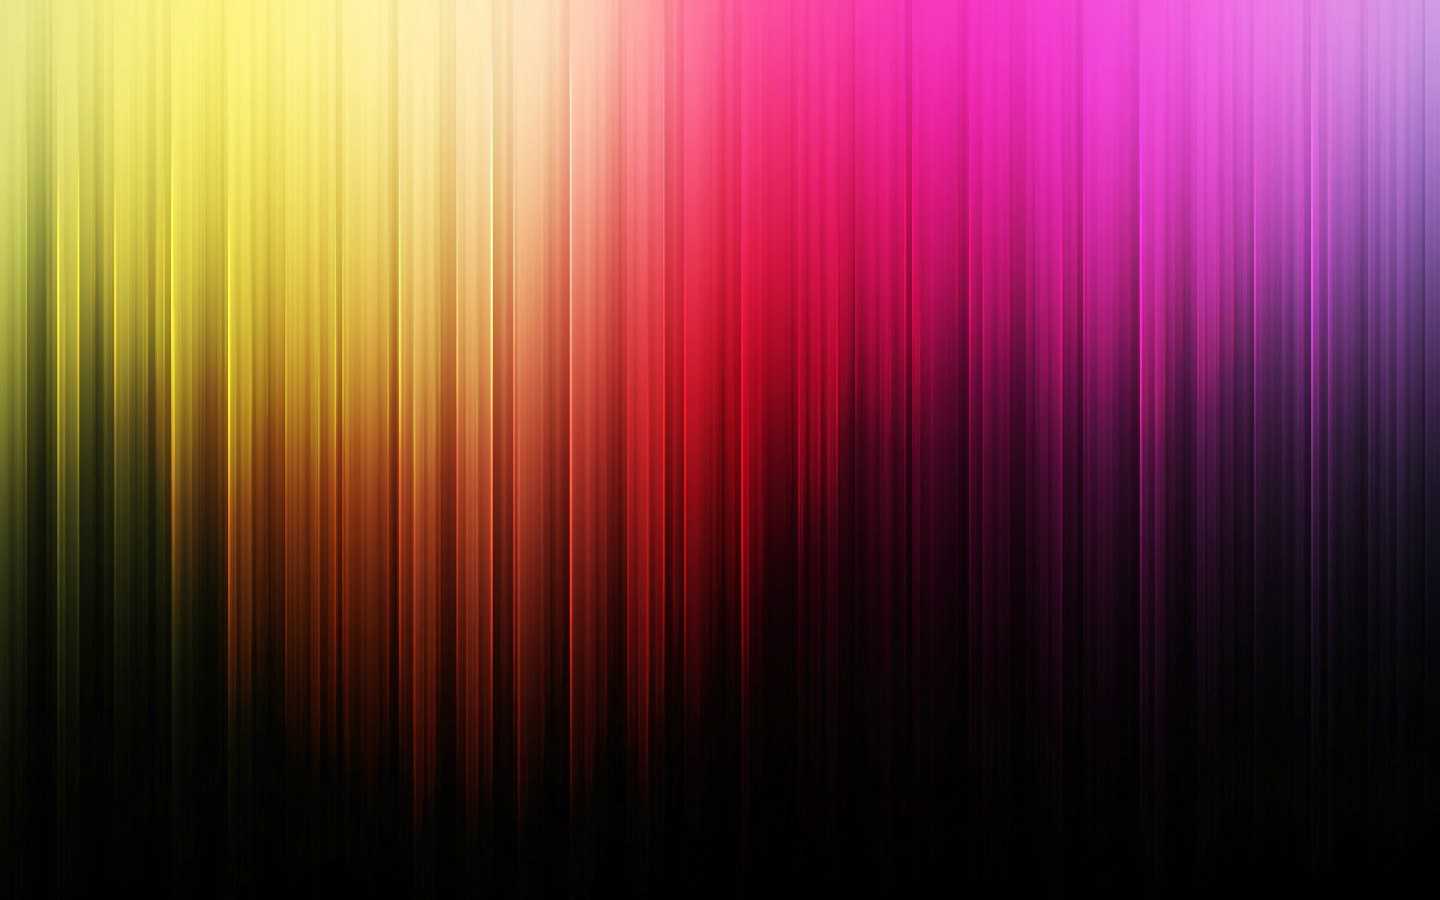 壁纸1440x900抽象背景 彩虹之色 炫彩色谱 抽象视觉壁纸壁纸 抽象背景 彩虹之色壁纸 抽象背景 彩虹之色图片 抽象背景 彩虹之色素材 插画壁纸 插画图库 插画图片素材桌面壁纸